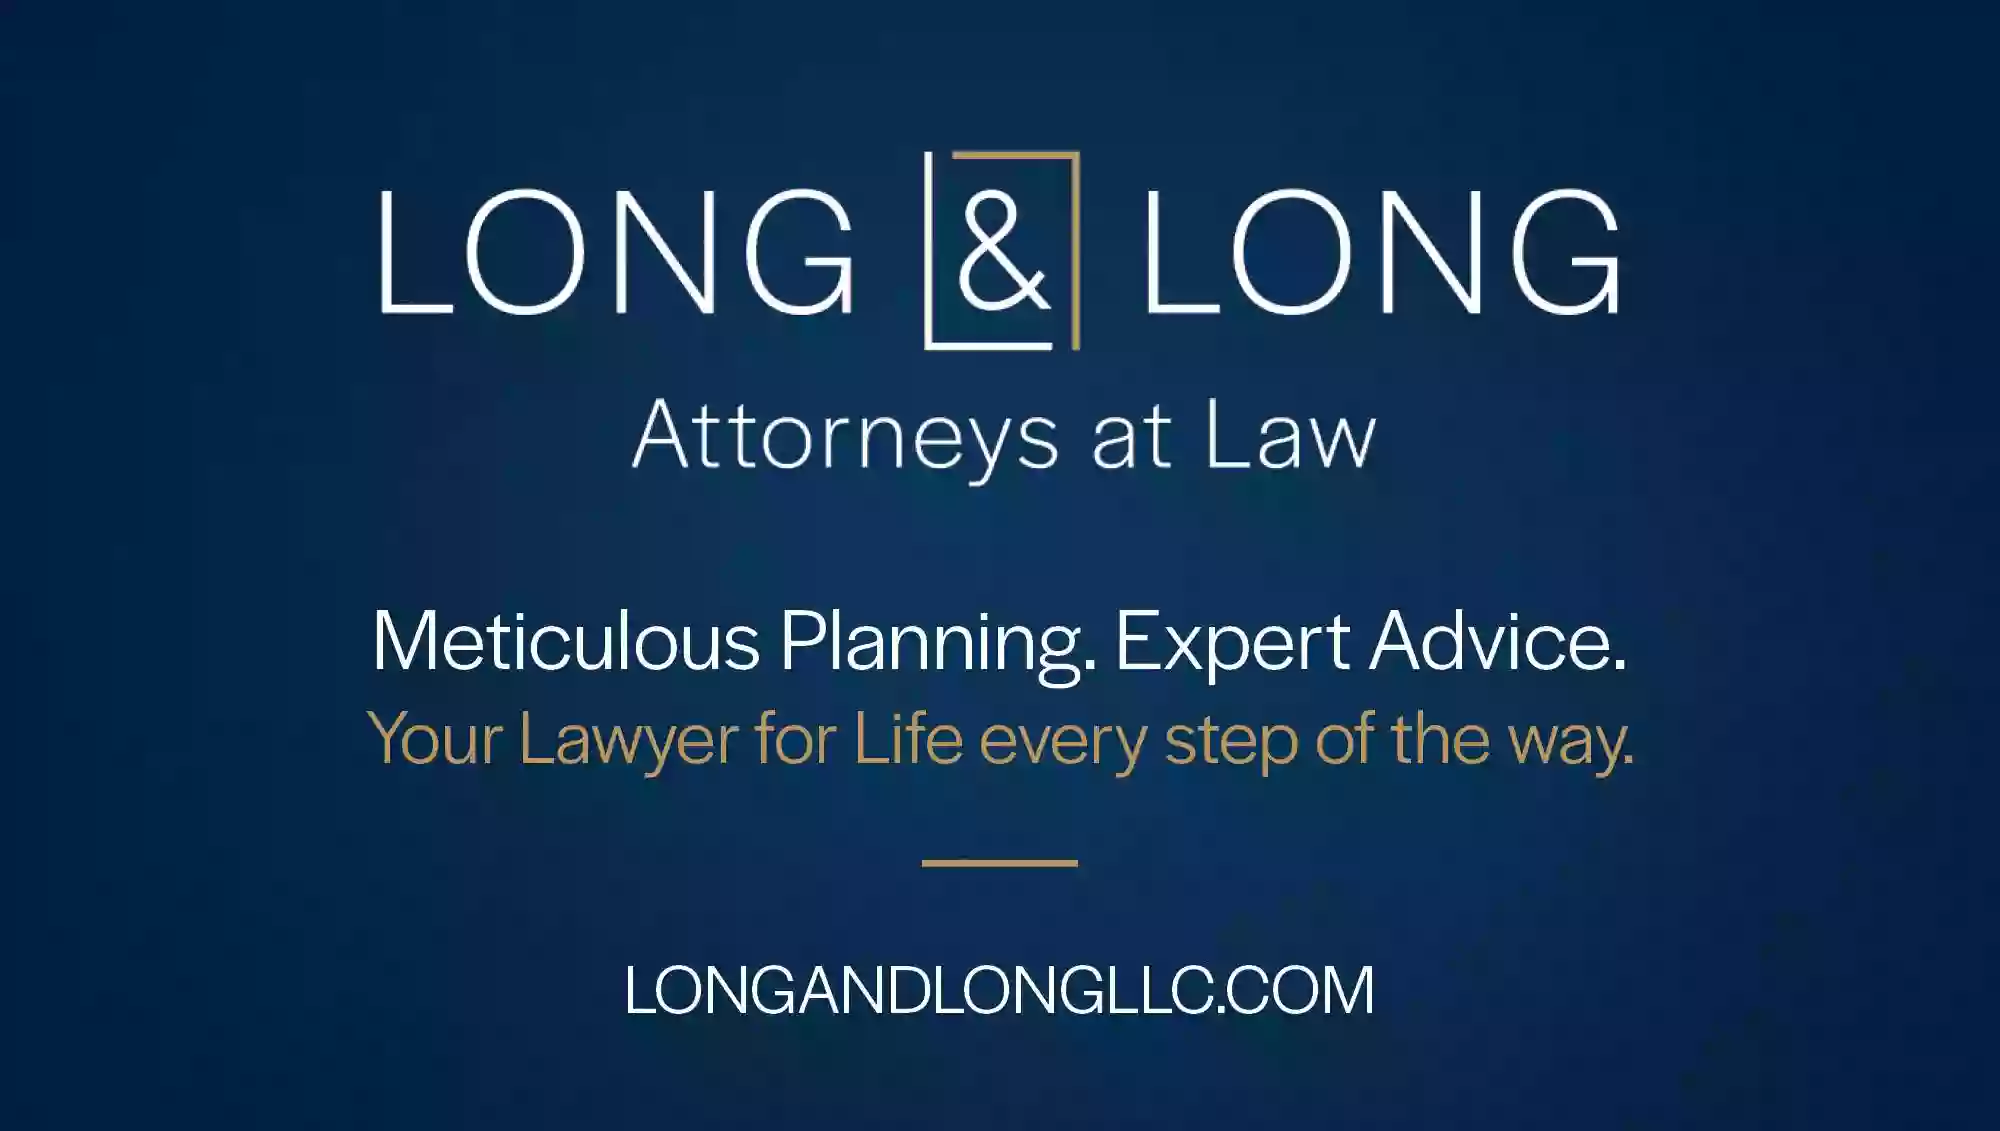 Long & Long, LLC